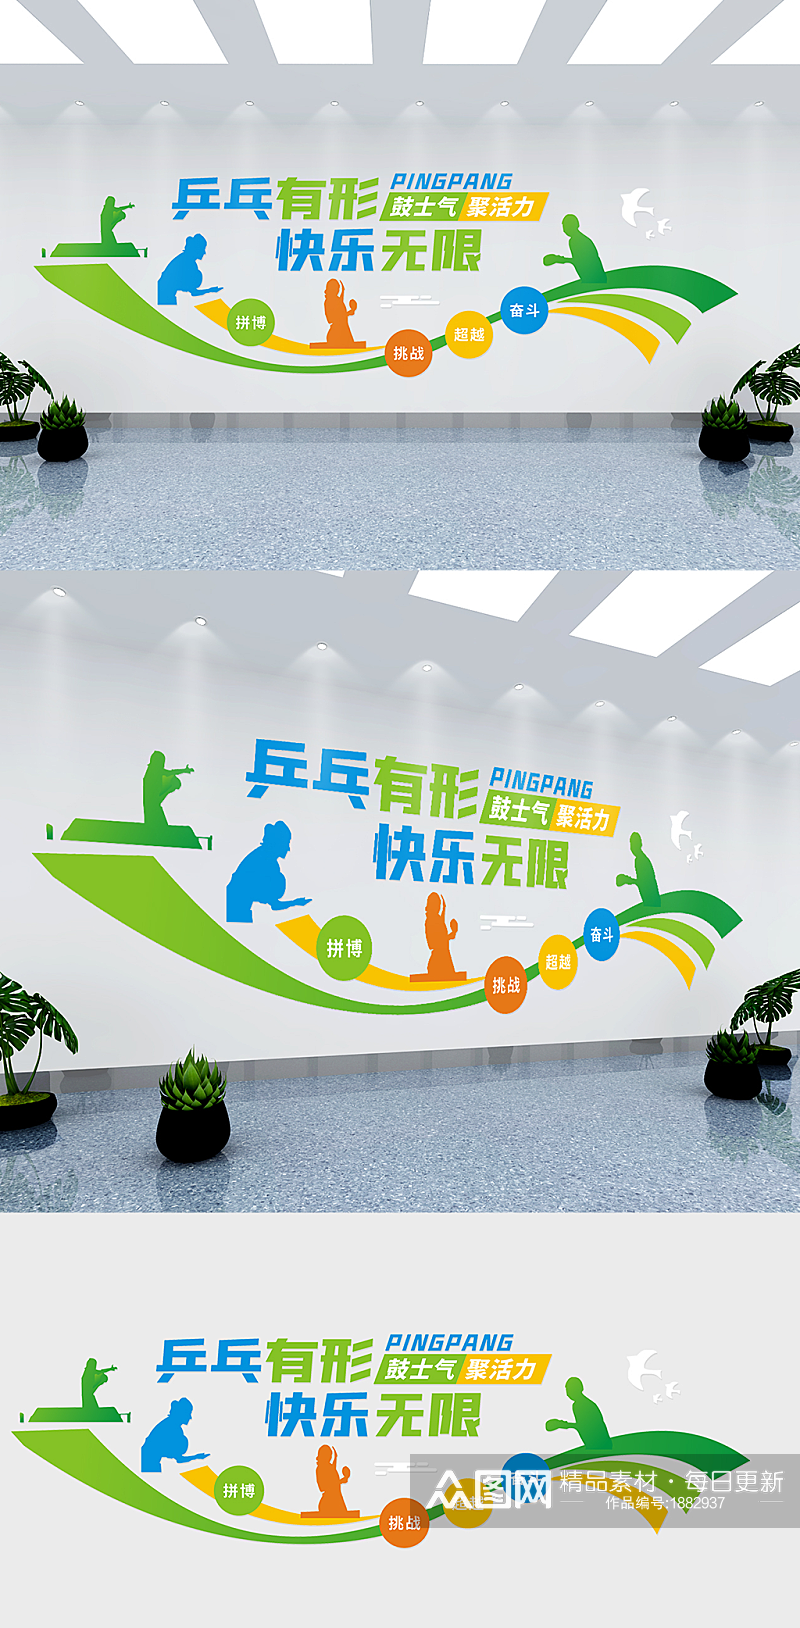 乒乓球活动室校园体育文化墙素材